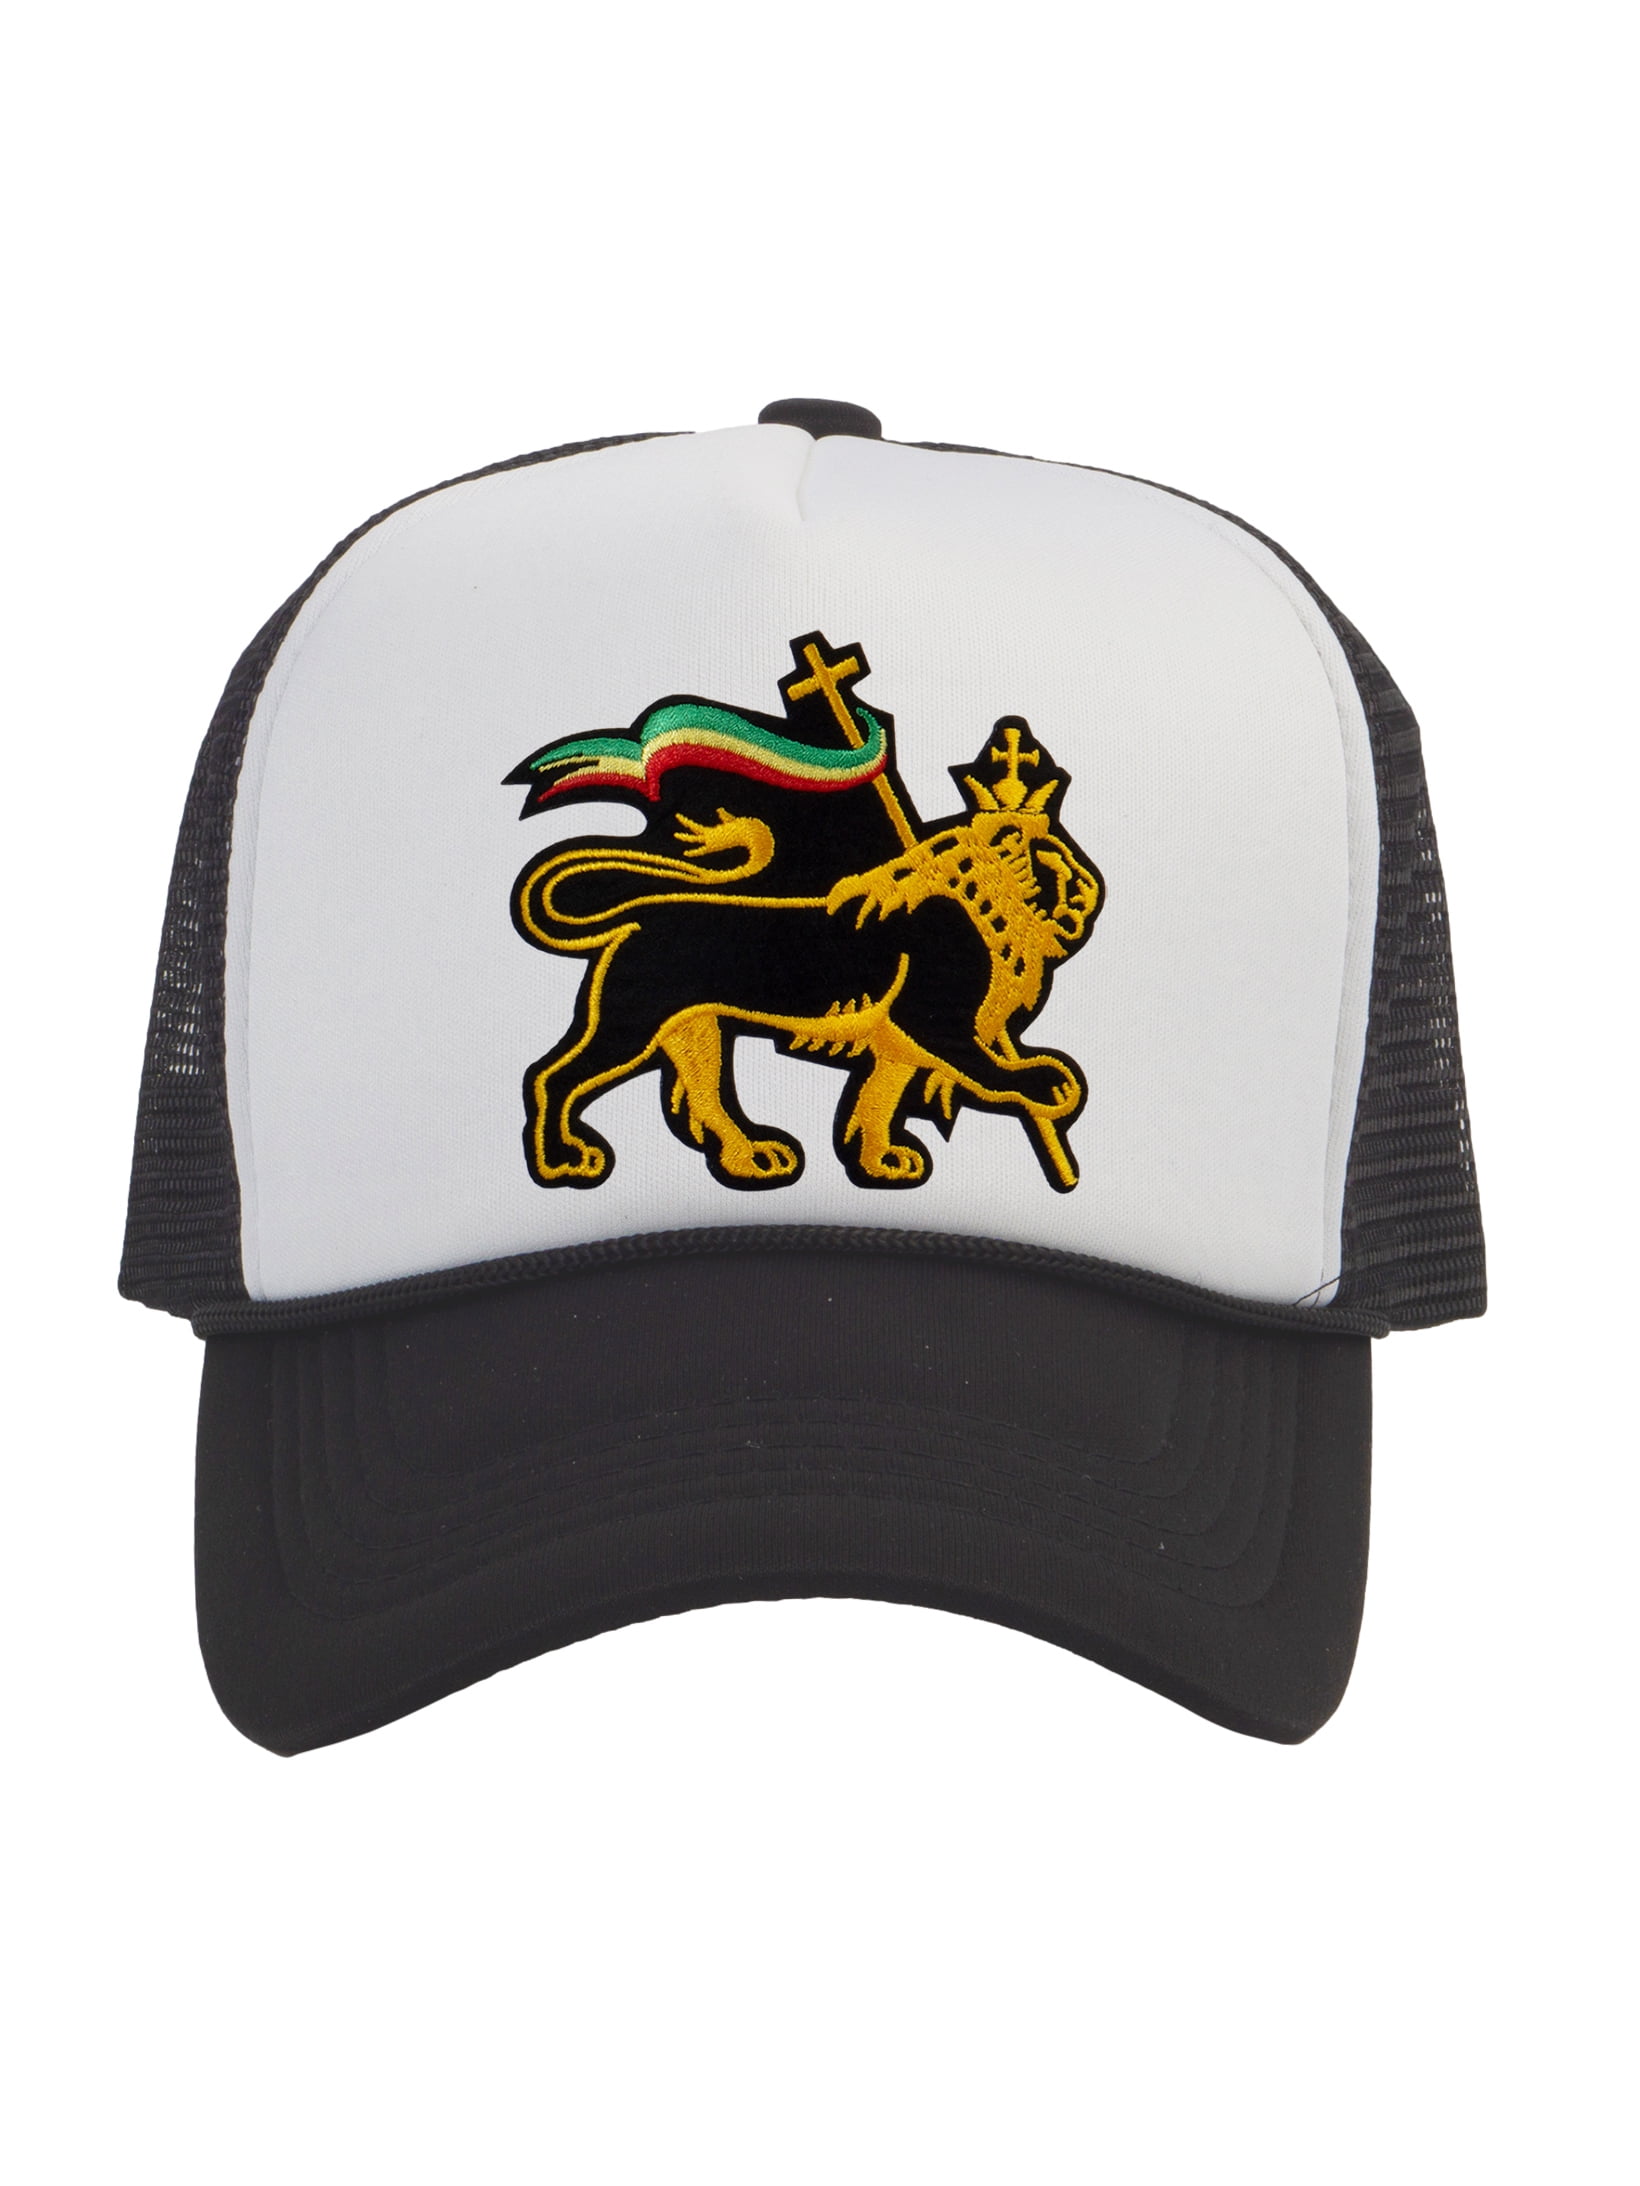 Rasta Lion of Judah Trucker Hat, White/Black